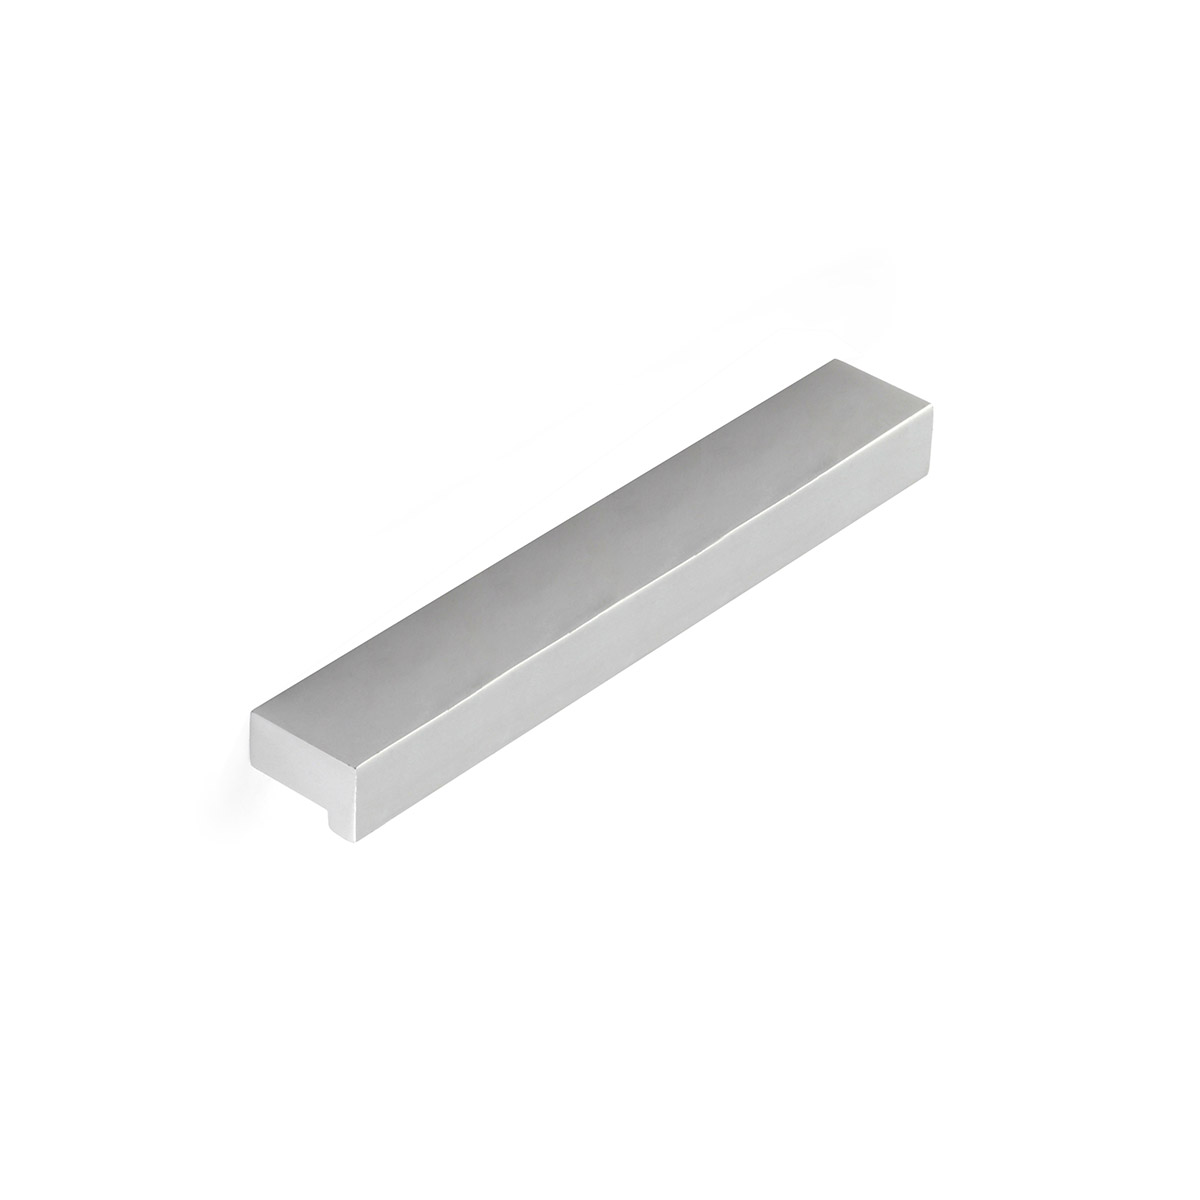 Poignée en aluminium avec finition anodisée mat, dimensions: 150x12x18mm et inserts: 128mm